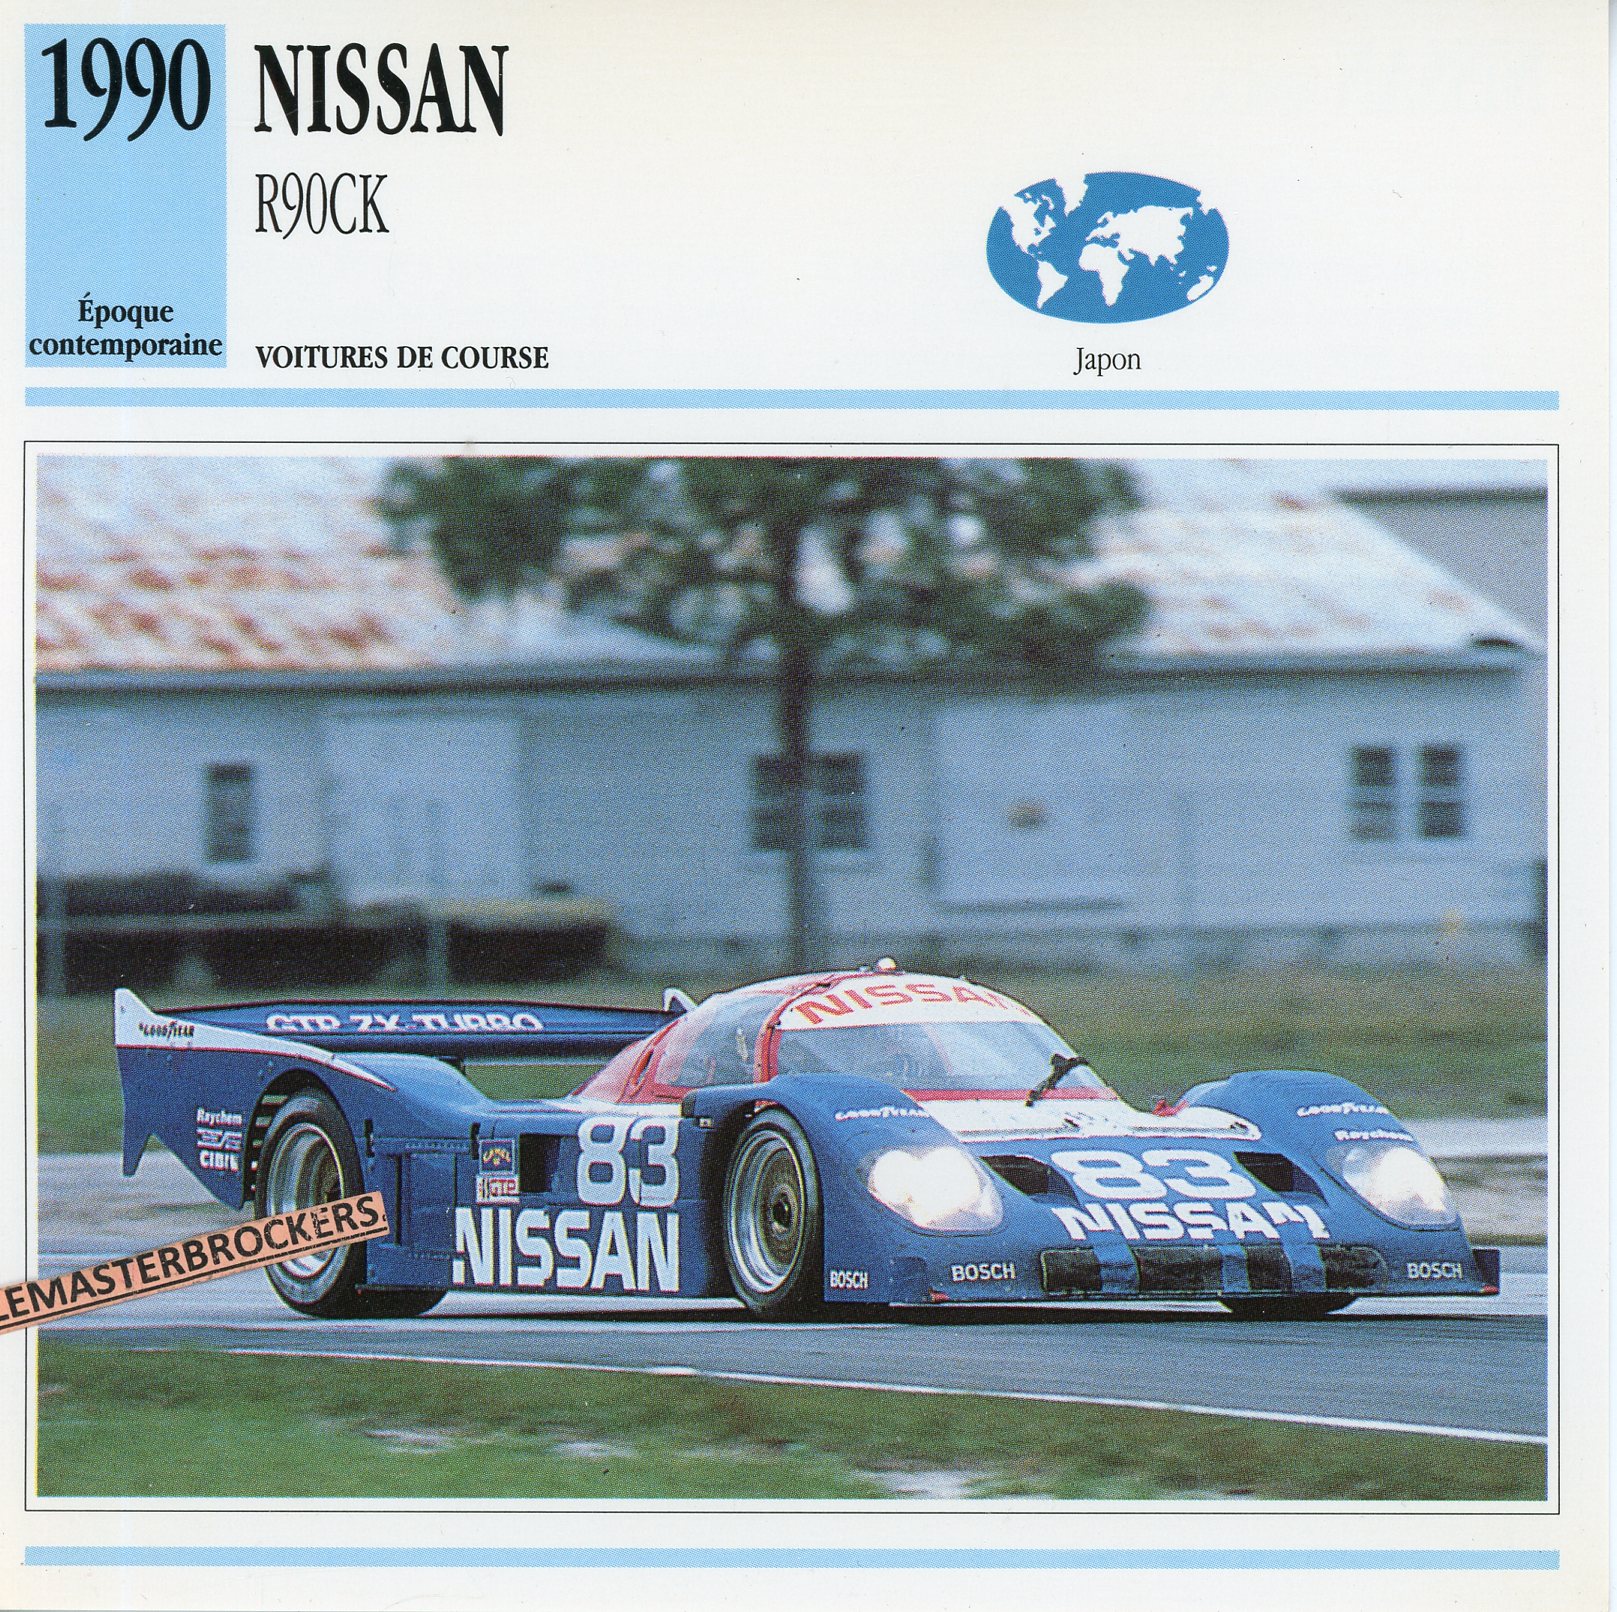 NISSAN-R90CK-1990-FICHE-AUTO-LEMASTERBROCKERS-VOITURE-DE-COURSE